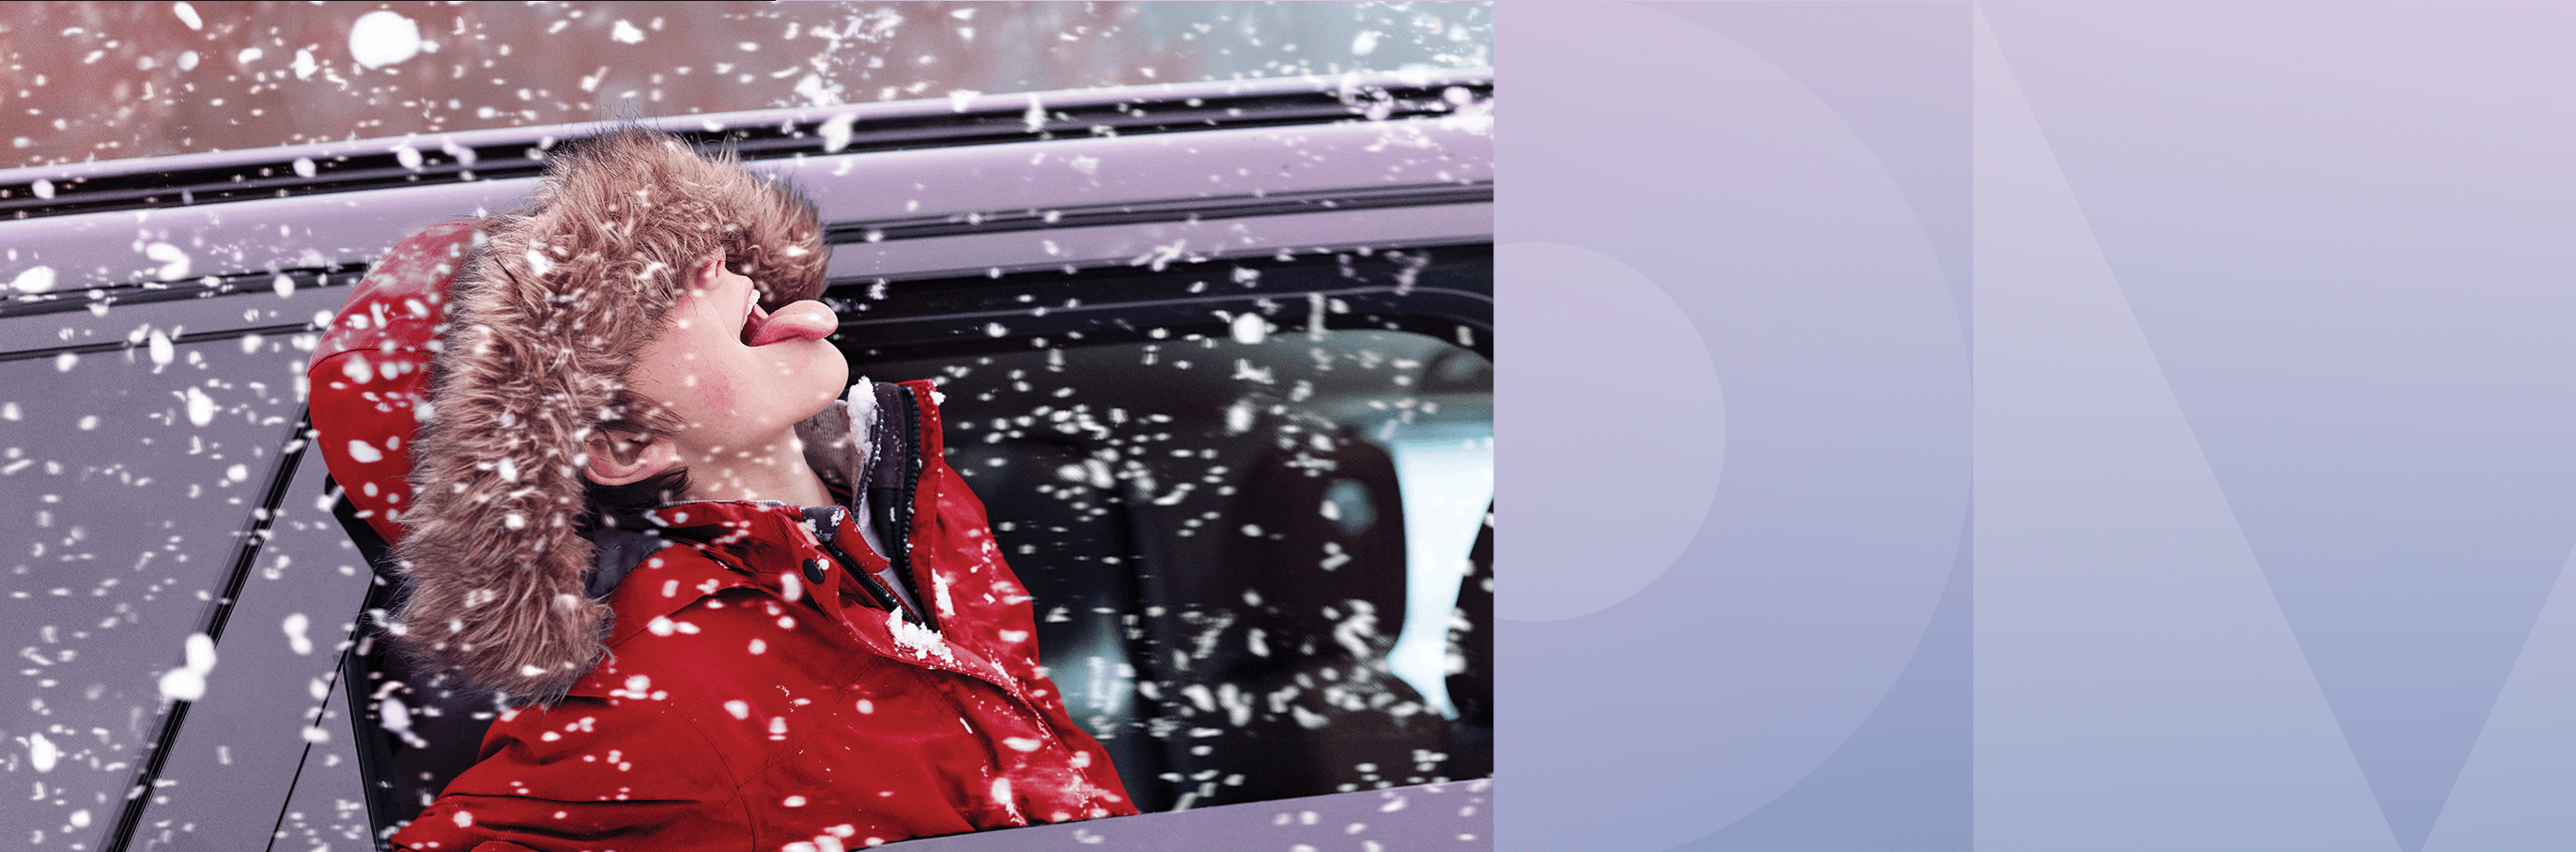 Une grande banderole sur un immeuble affiche « Des serveurs à refroidissement liquide pour lutter contre le réchauffement climatique, c’est plus intelligent » et montre un jeune enfant vêtu d’un manteau rouge à capuche en fourrure qui attrape des flocons de neige avec sa langue.